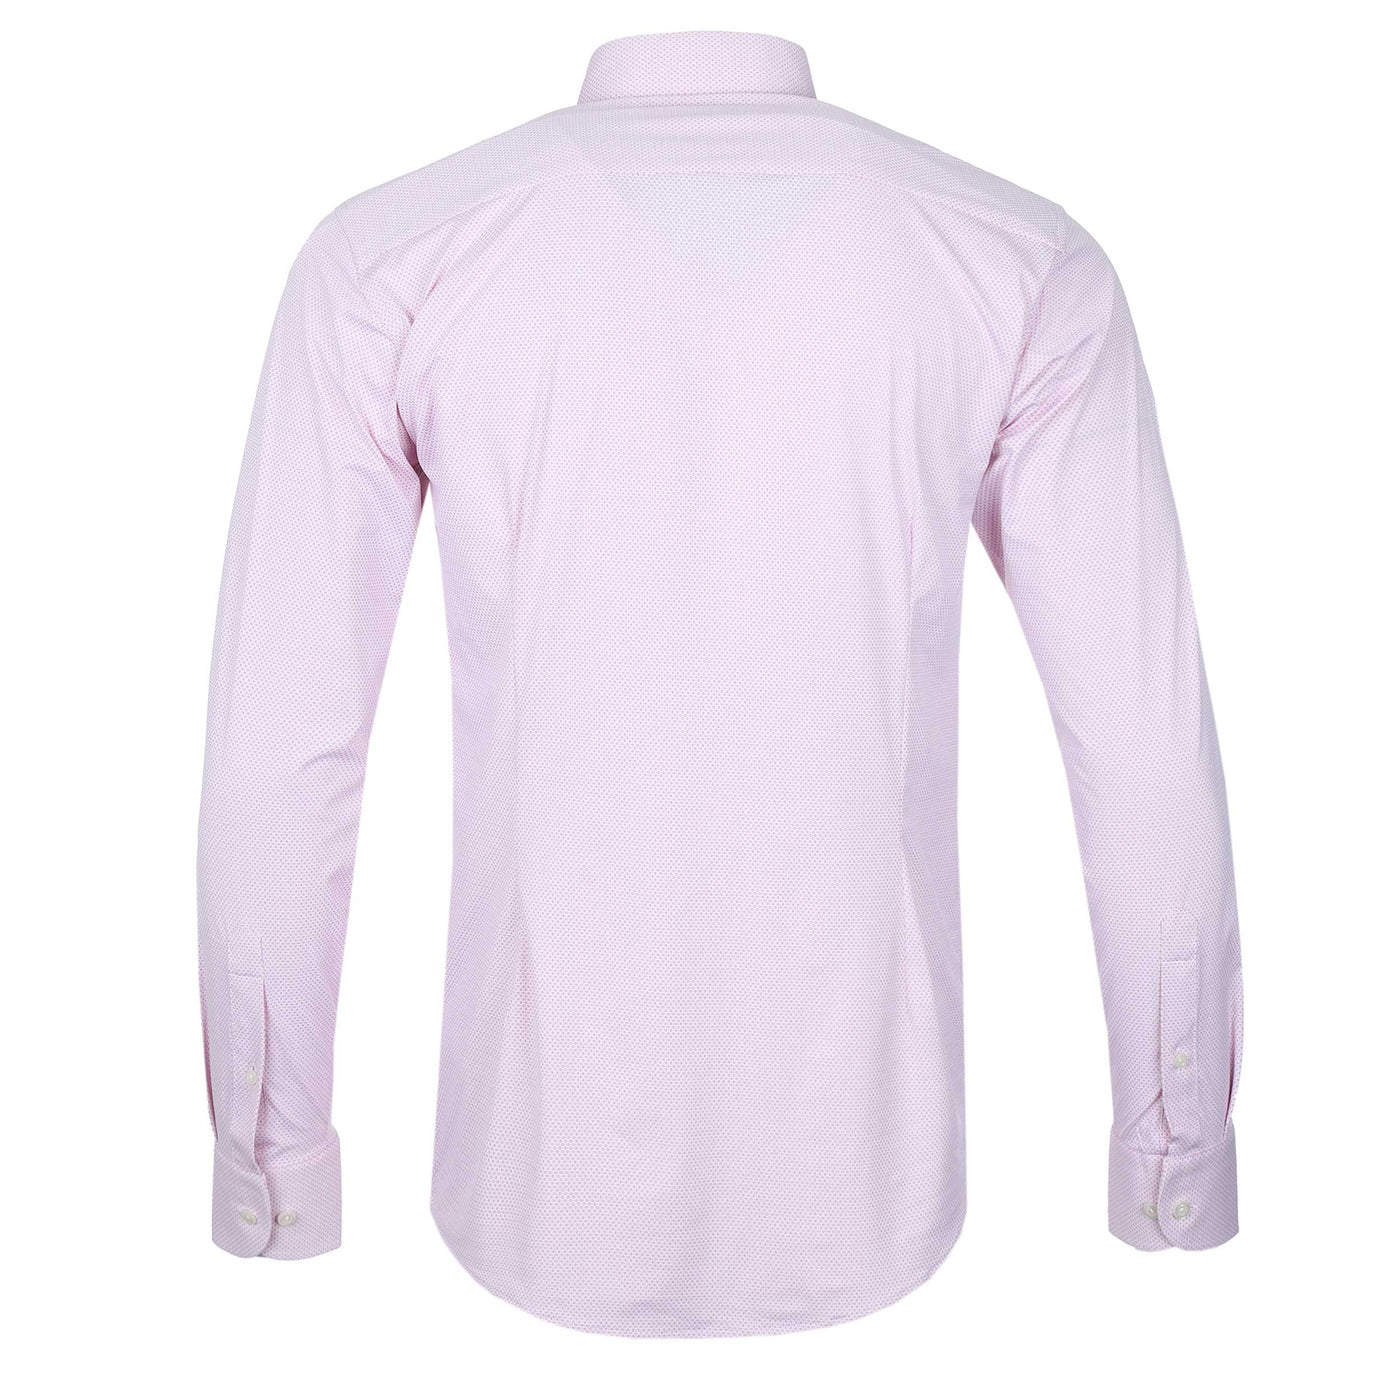 Eton 4 Way Stretch Shirt in Pink Back